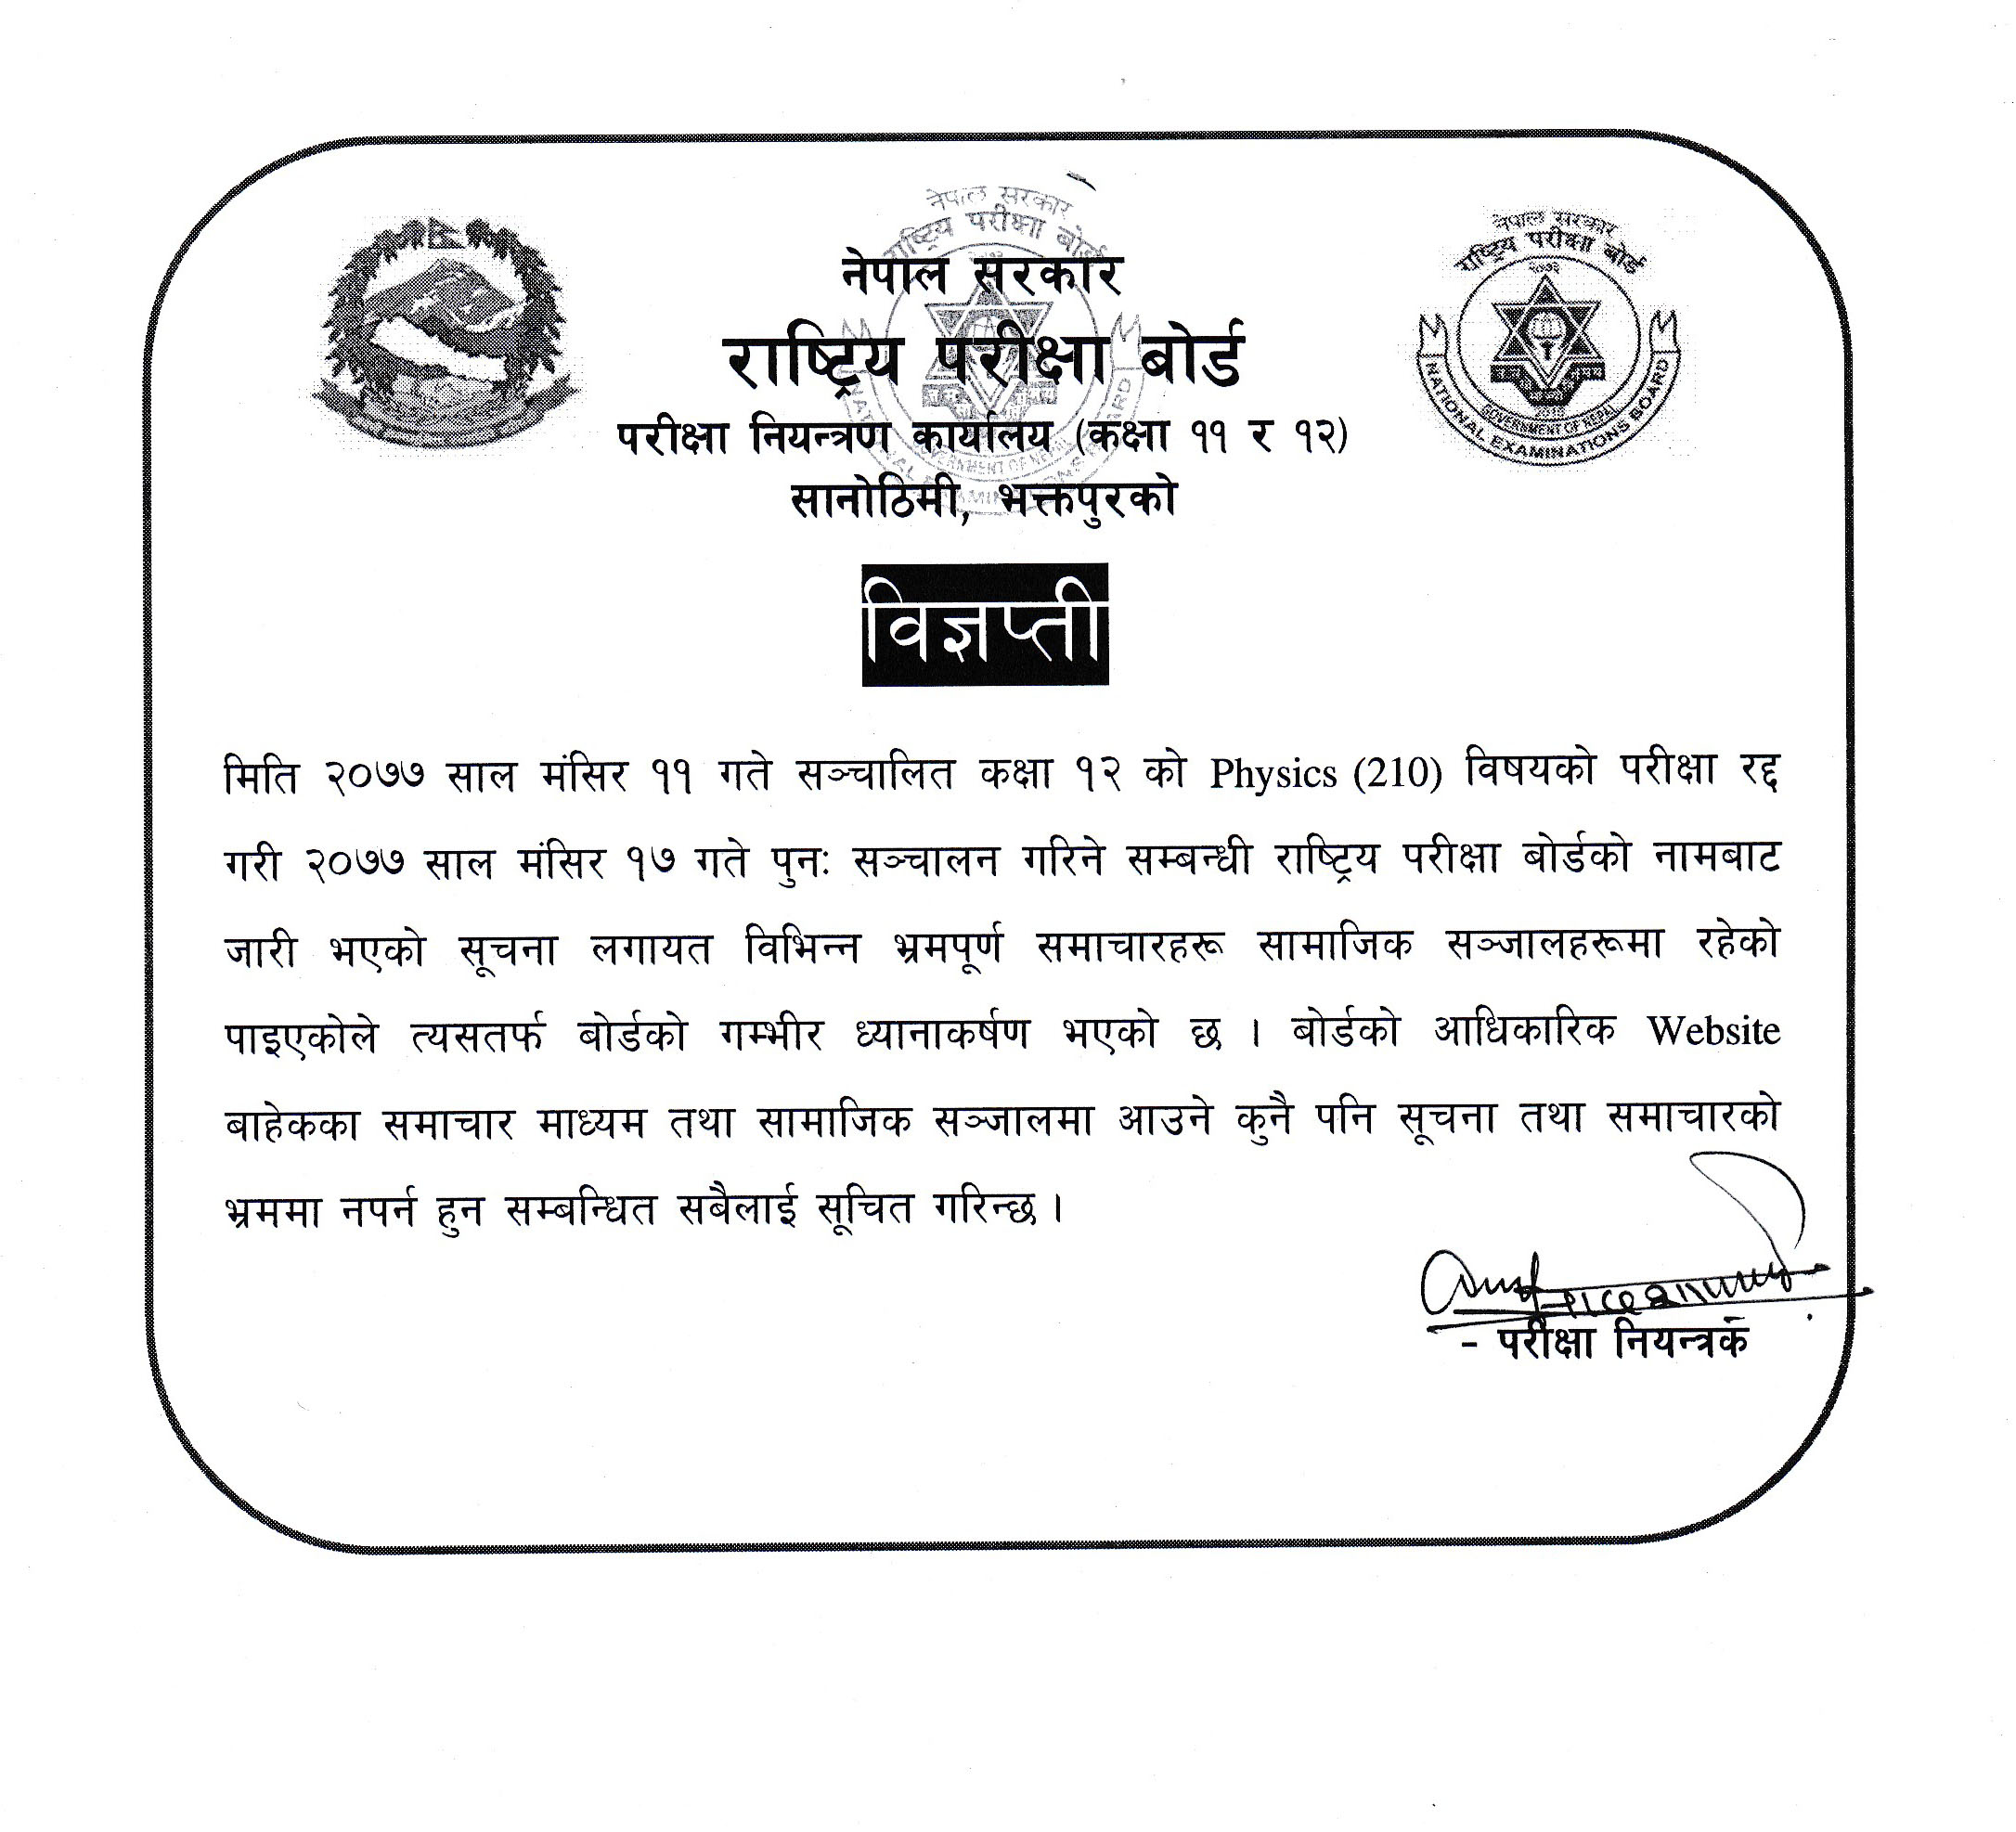 नेपाल सरकार राष्ट्रिय परीक्षा बोर्ड परीक्षा नियन्त्रण कार्यालय सानोठिमी , भक्तपुरको विज्ञप्तिनेपाल सरकार राष्ट्रिय परीक्षा बोर्ड परीक्षा नियन्त्रण कार्यालय सानोठिमी , भक्तपुरको विज्ञप्ति